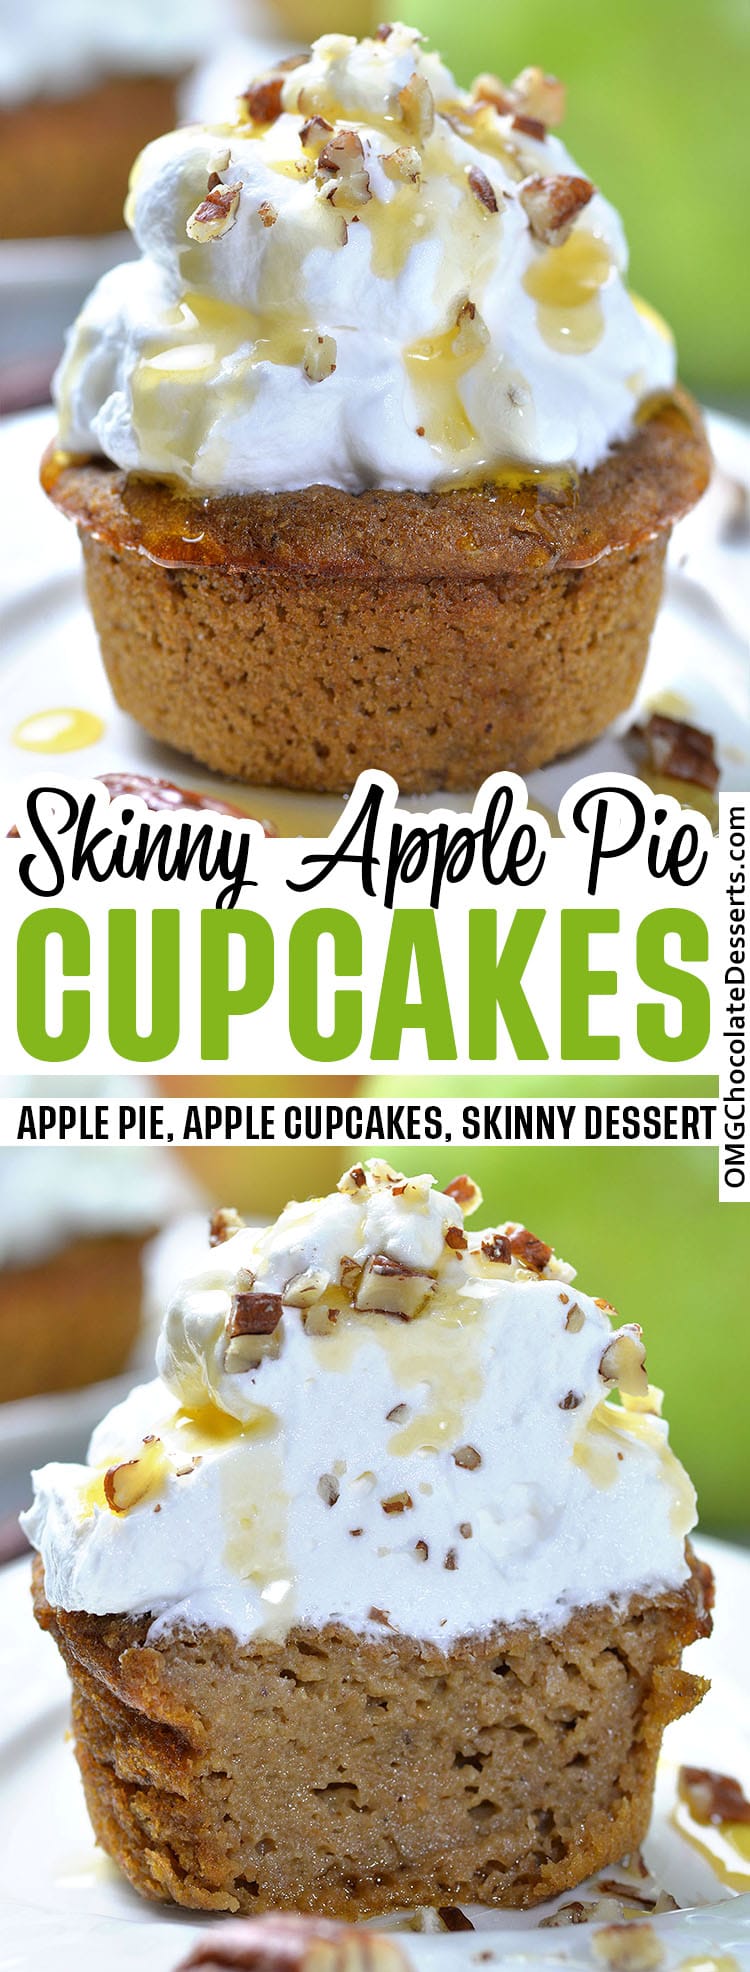 Skinny Apple Pie Cupcakes